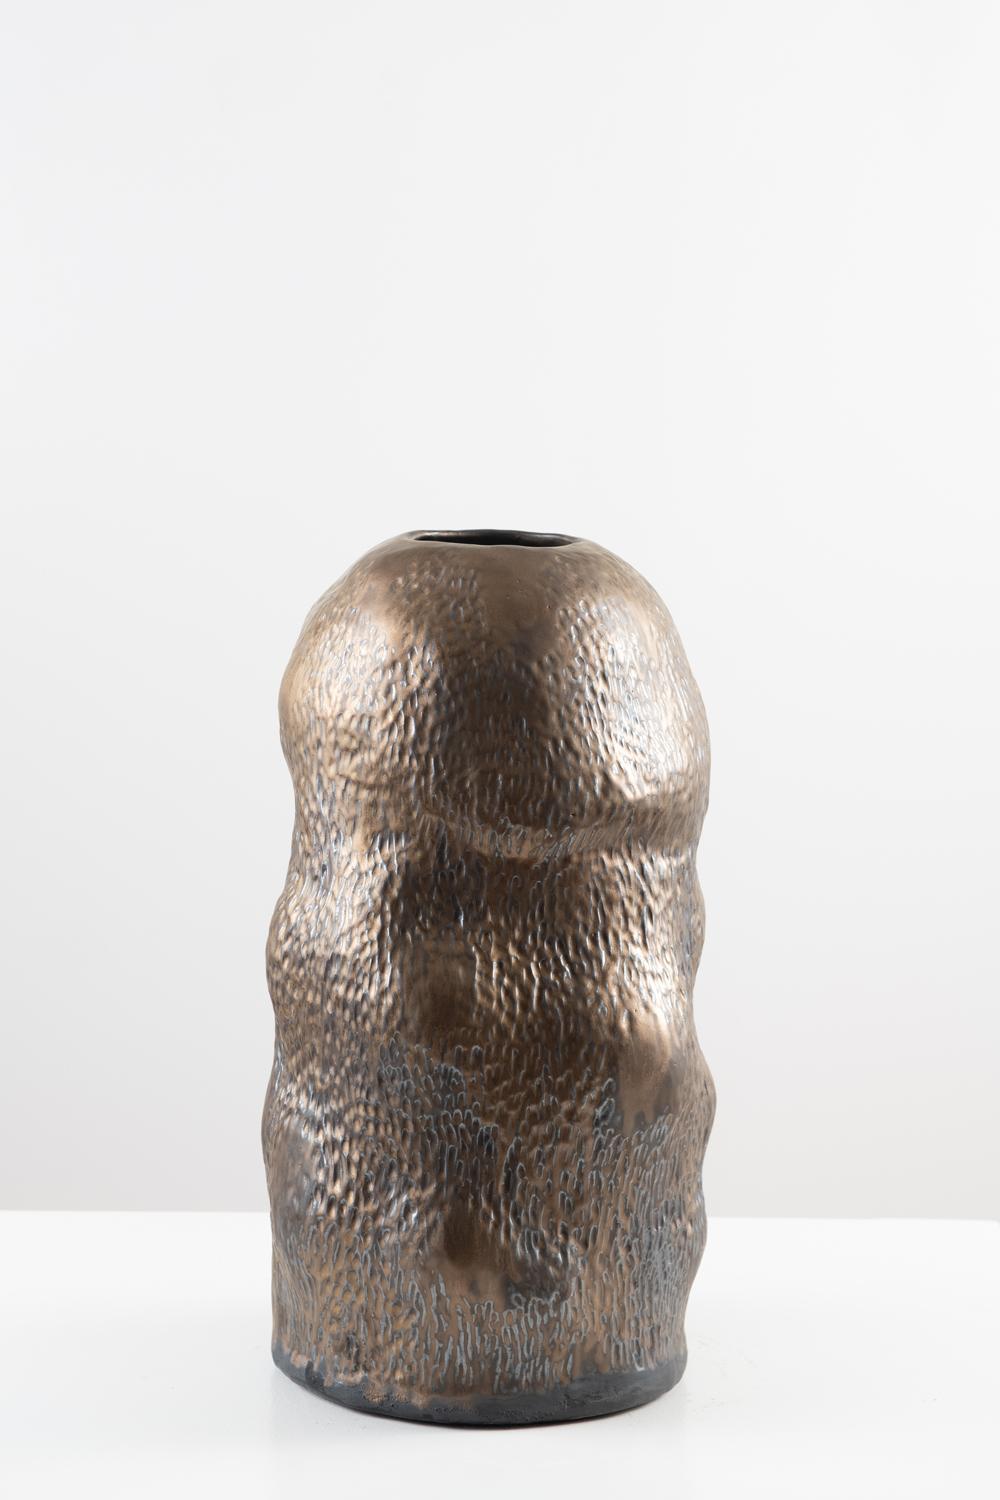 Trish DeMasi
Camille Vessel, 2021
Céramique émaillée métallique
9 x 9 x 18 in.